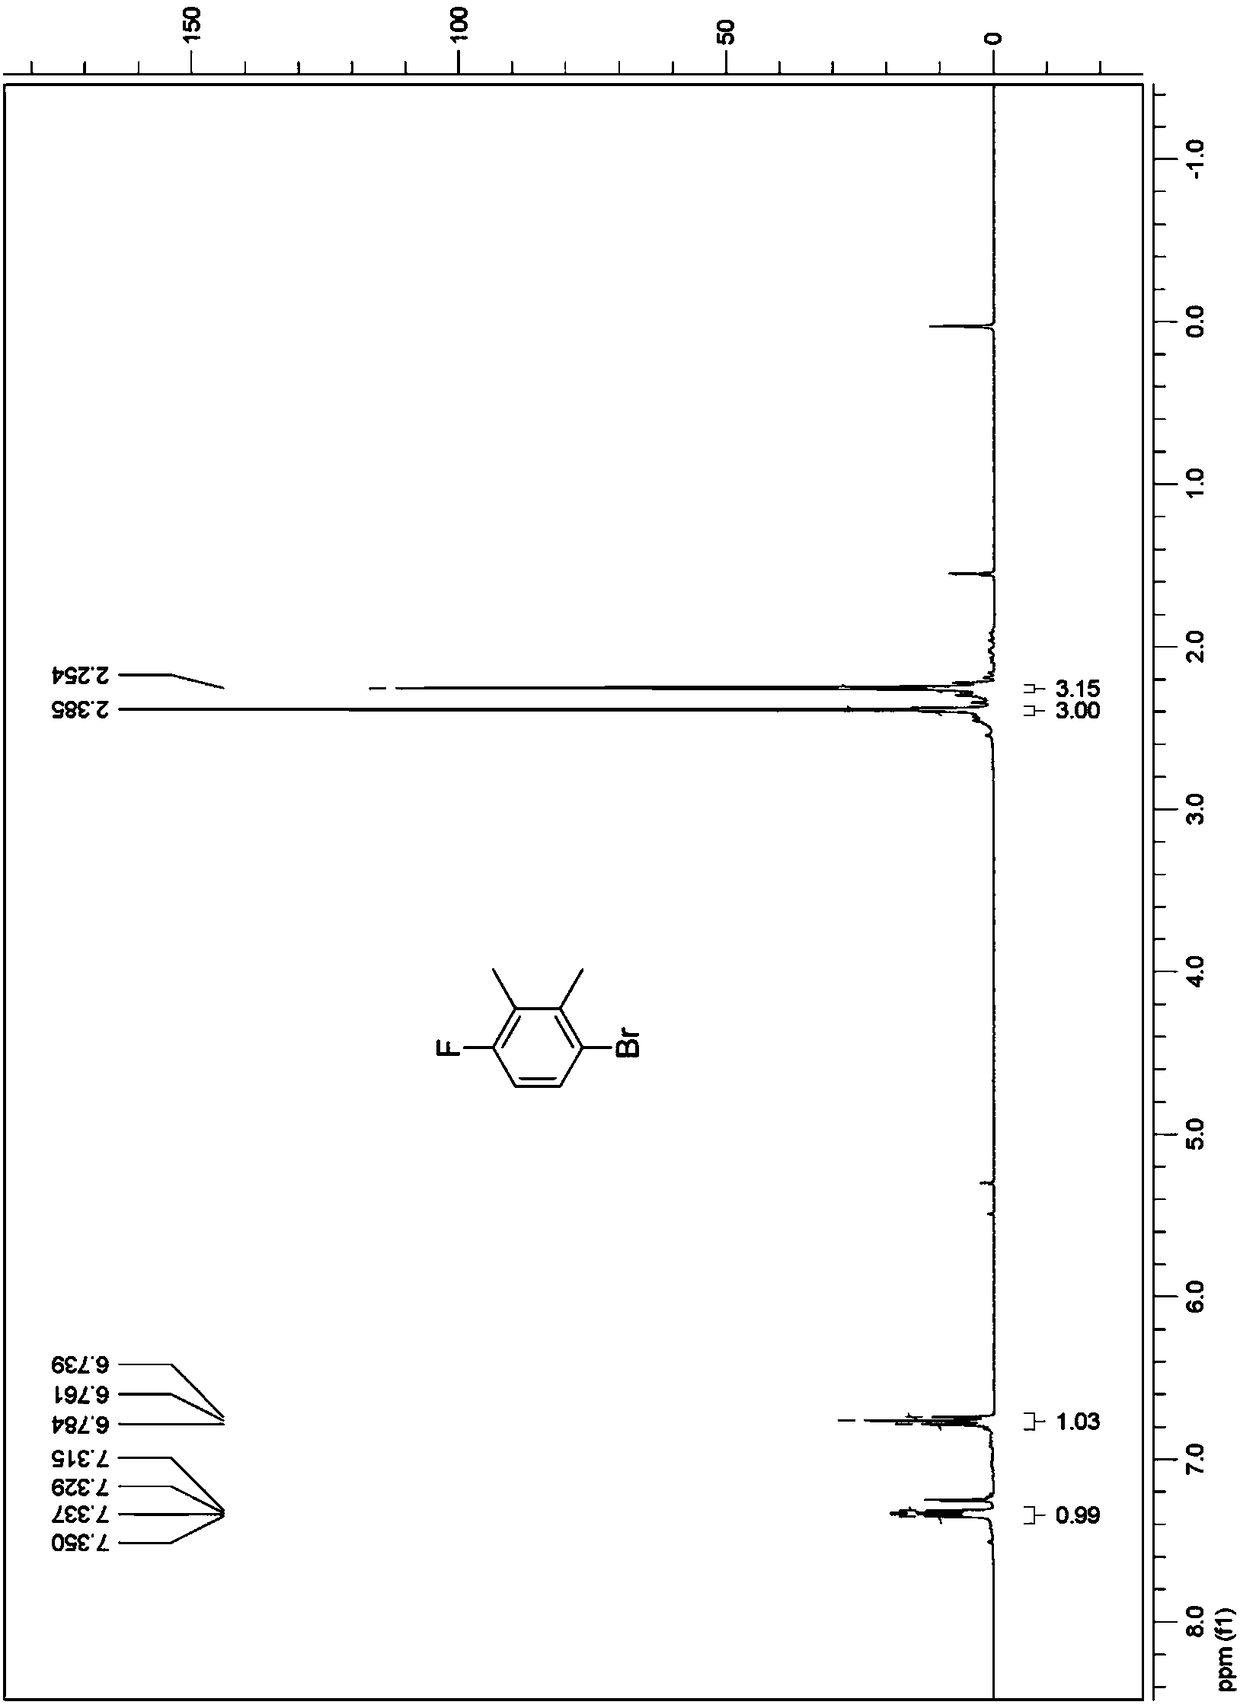 Method for synthesizing 2, 3-dimethyl-4-fluorophenol